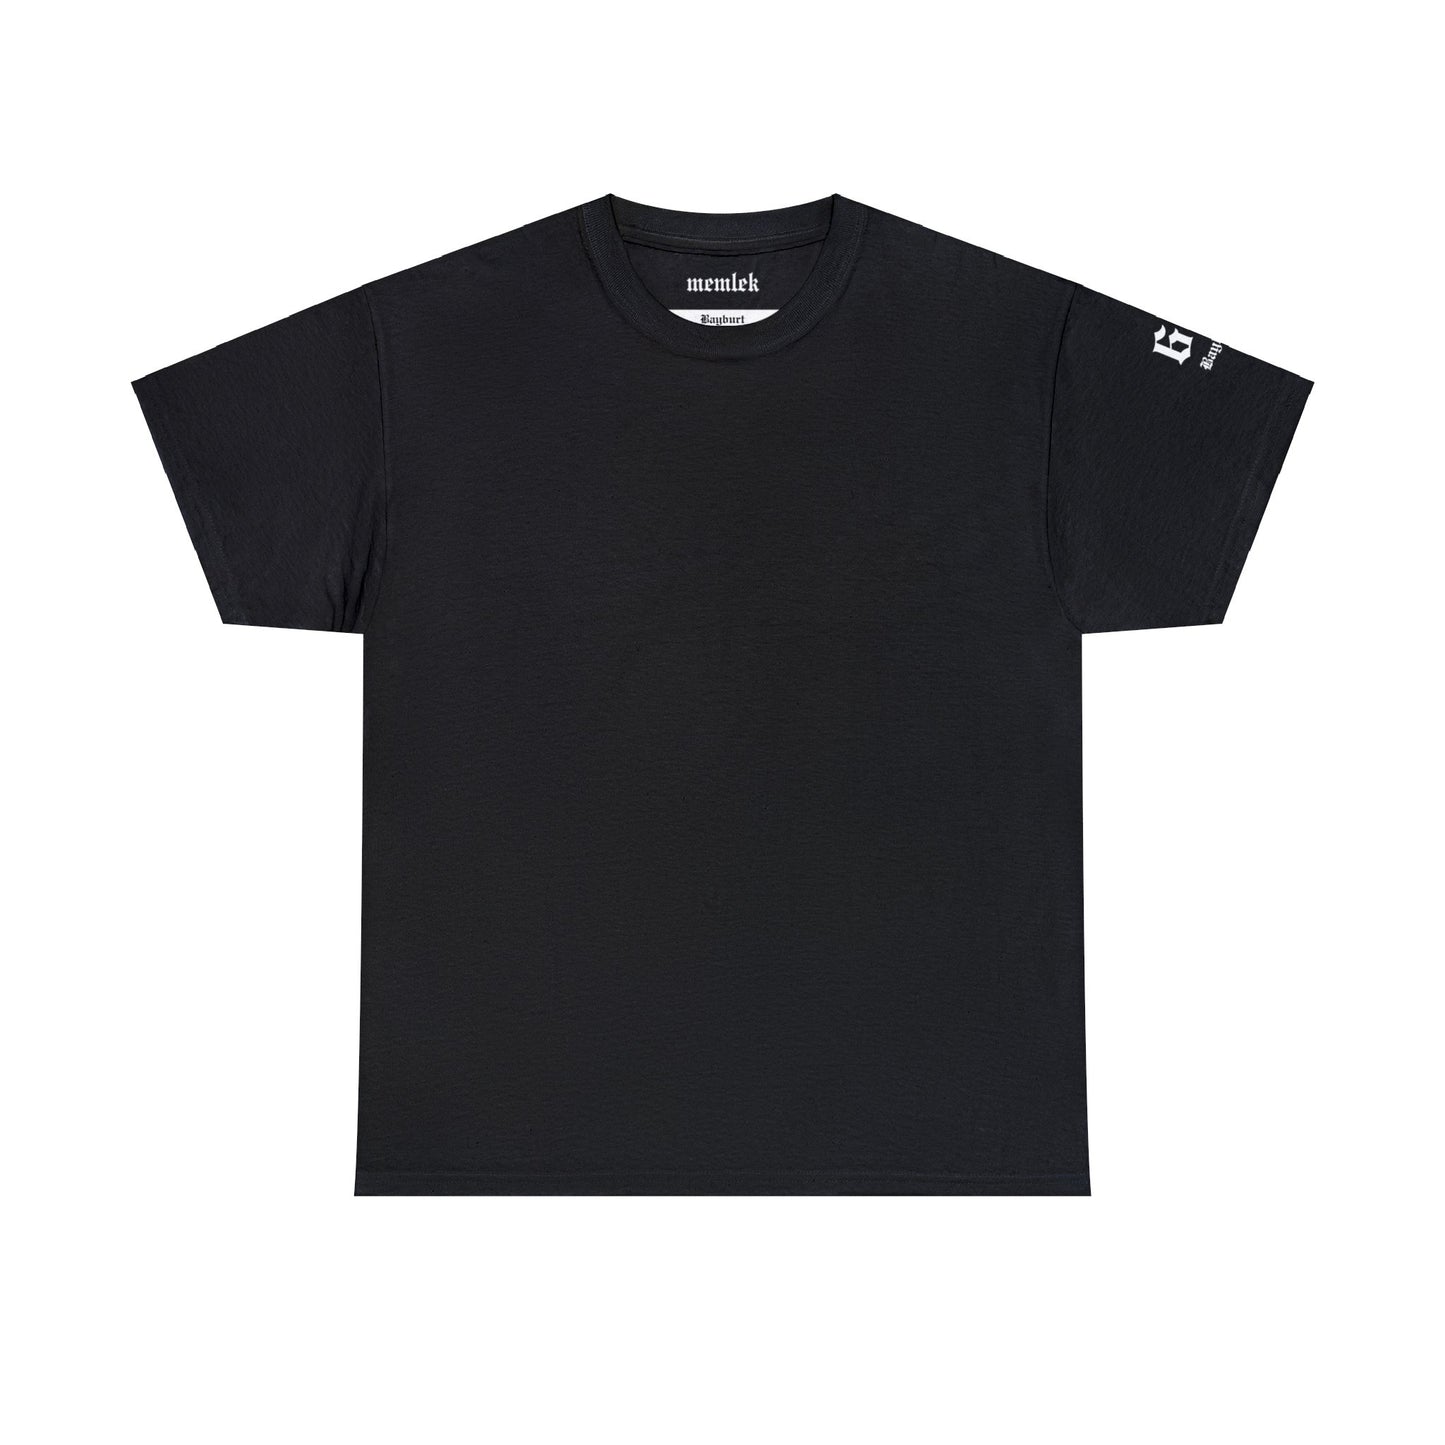 Şehirim - 69 Bayburt - T-Shirt - Back Print - Black